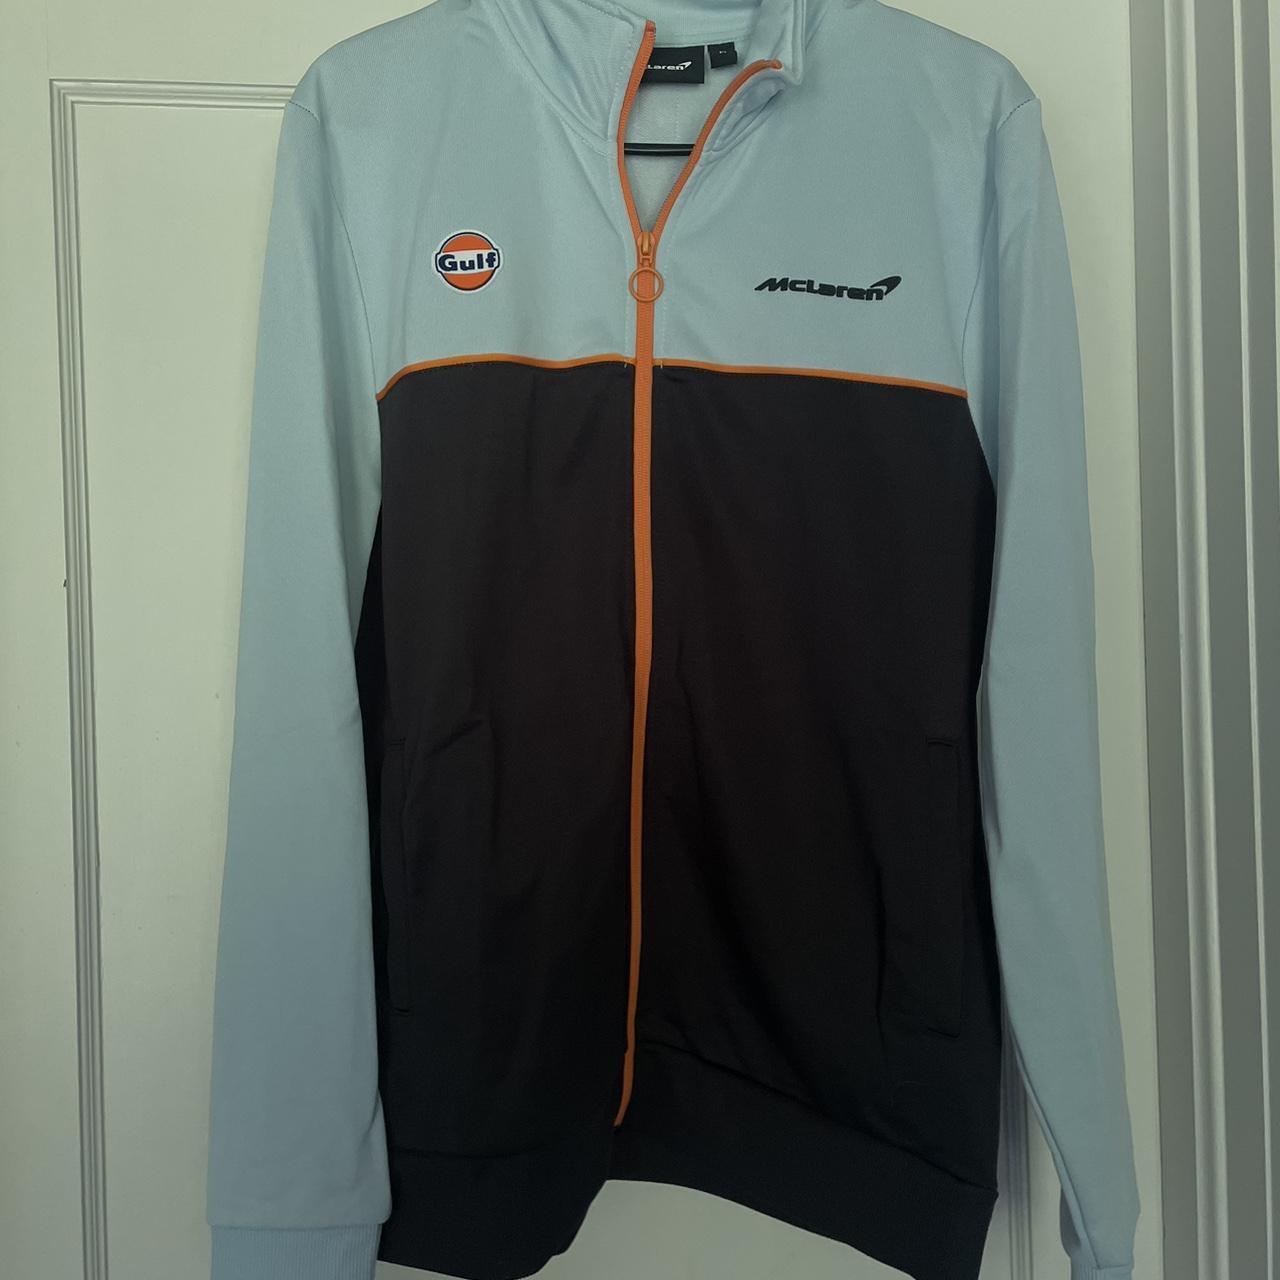 McLaren Limited edition Gulf jacket! Men’s medium,... - Depop